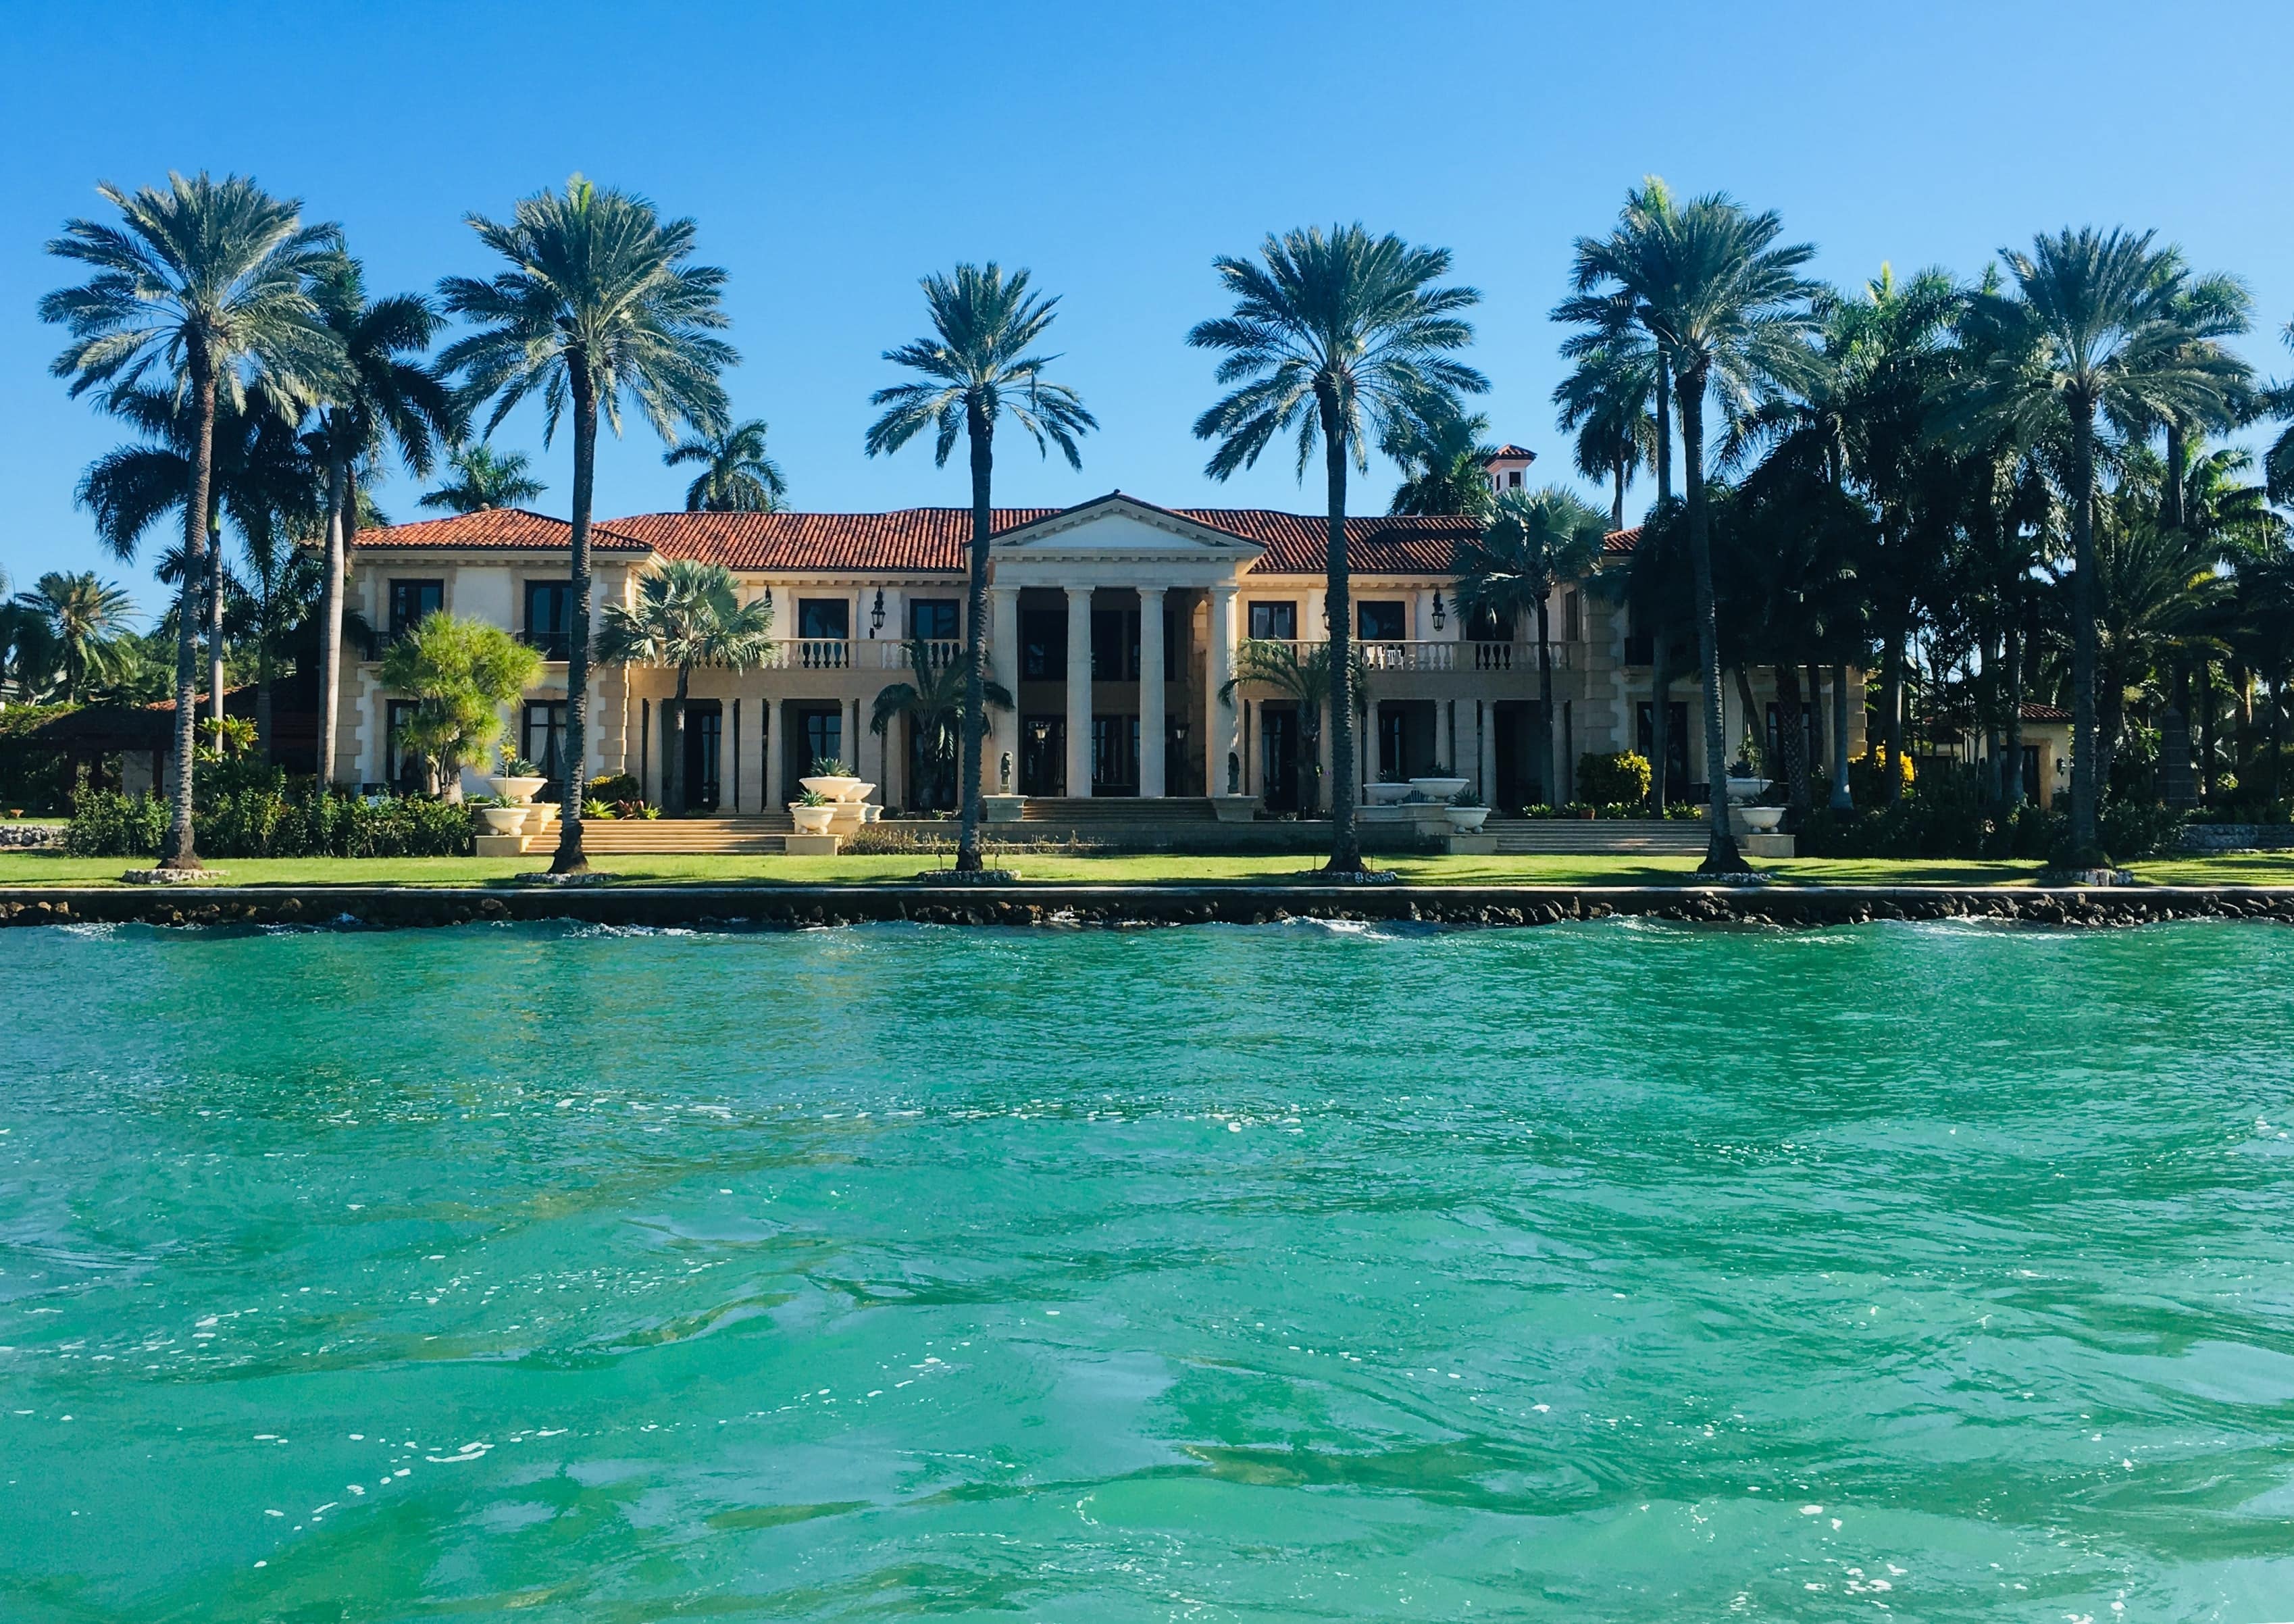 Hyr hus i Florida och unna dig en tropisk paradissemester